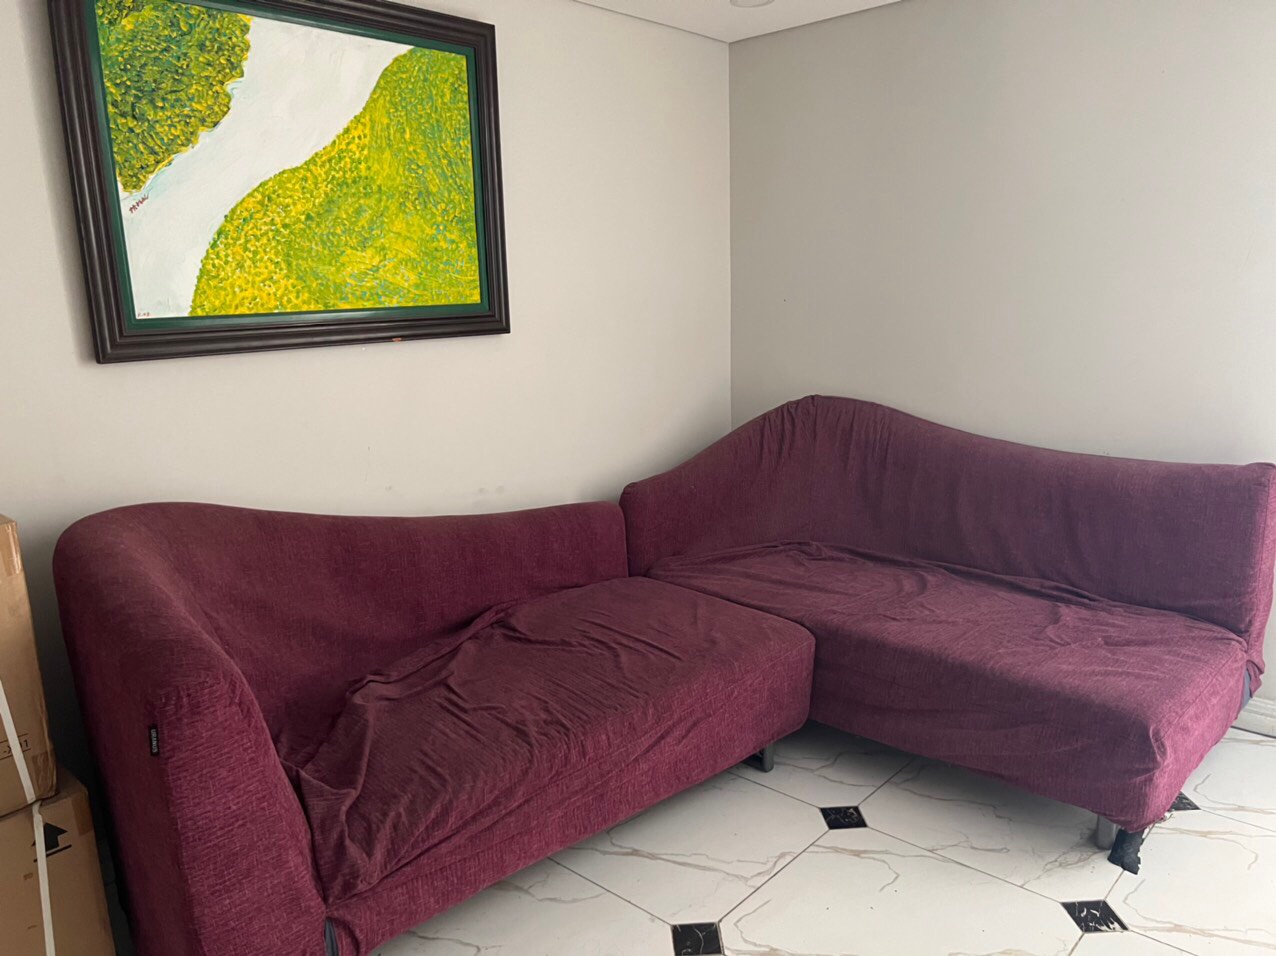 Bộ ghế sofa đnag bị nhão vỏ cho khách tại Thảo Điền, Quận 2